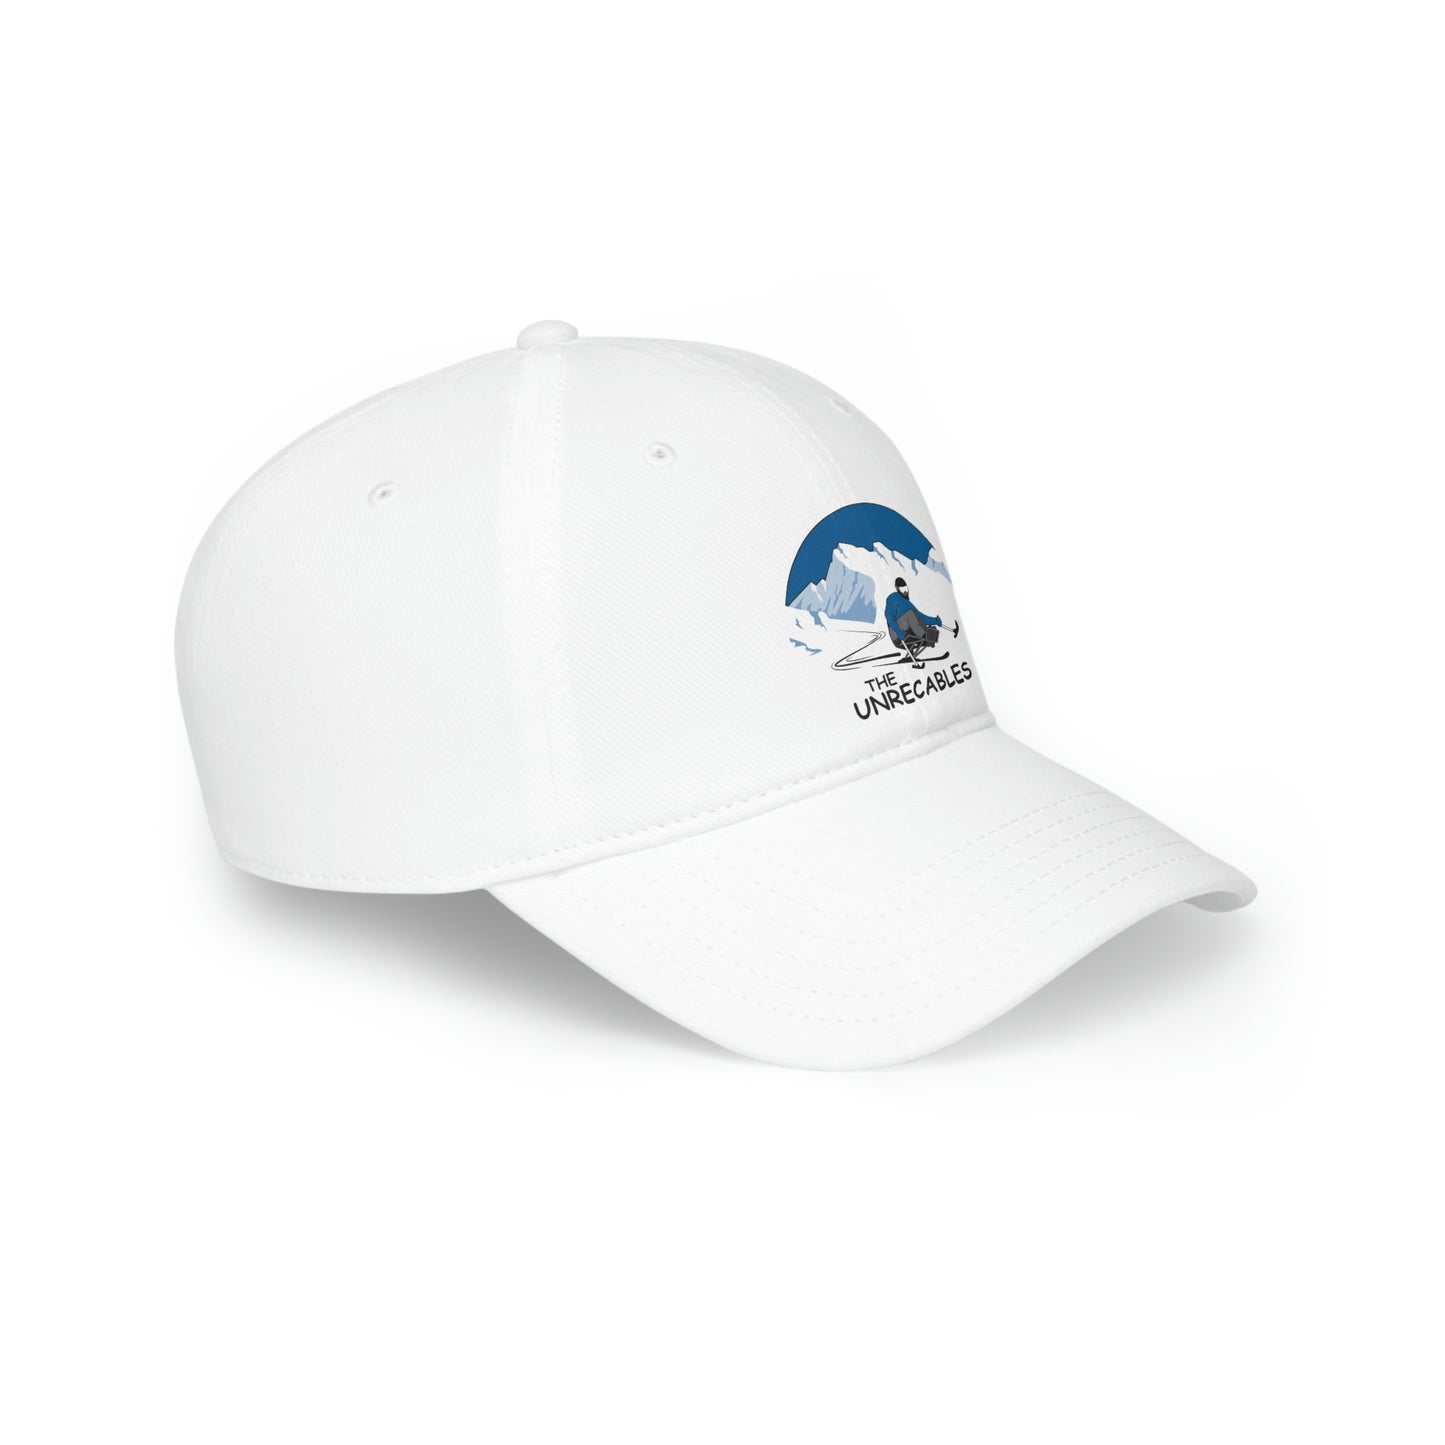 Baseball Cap - The Unrecables logo